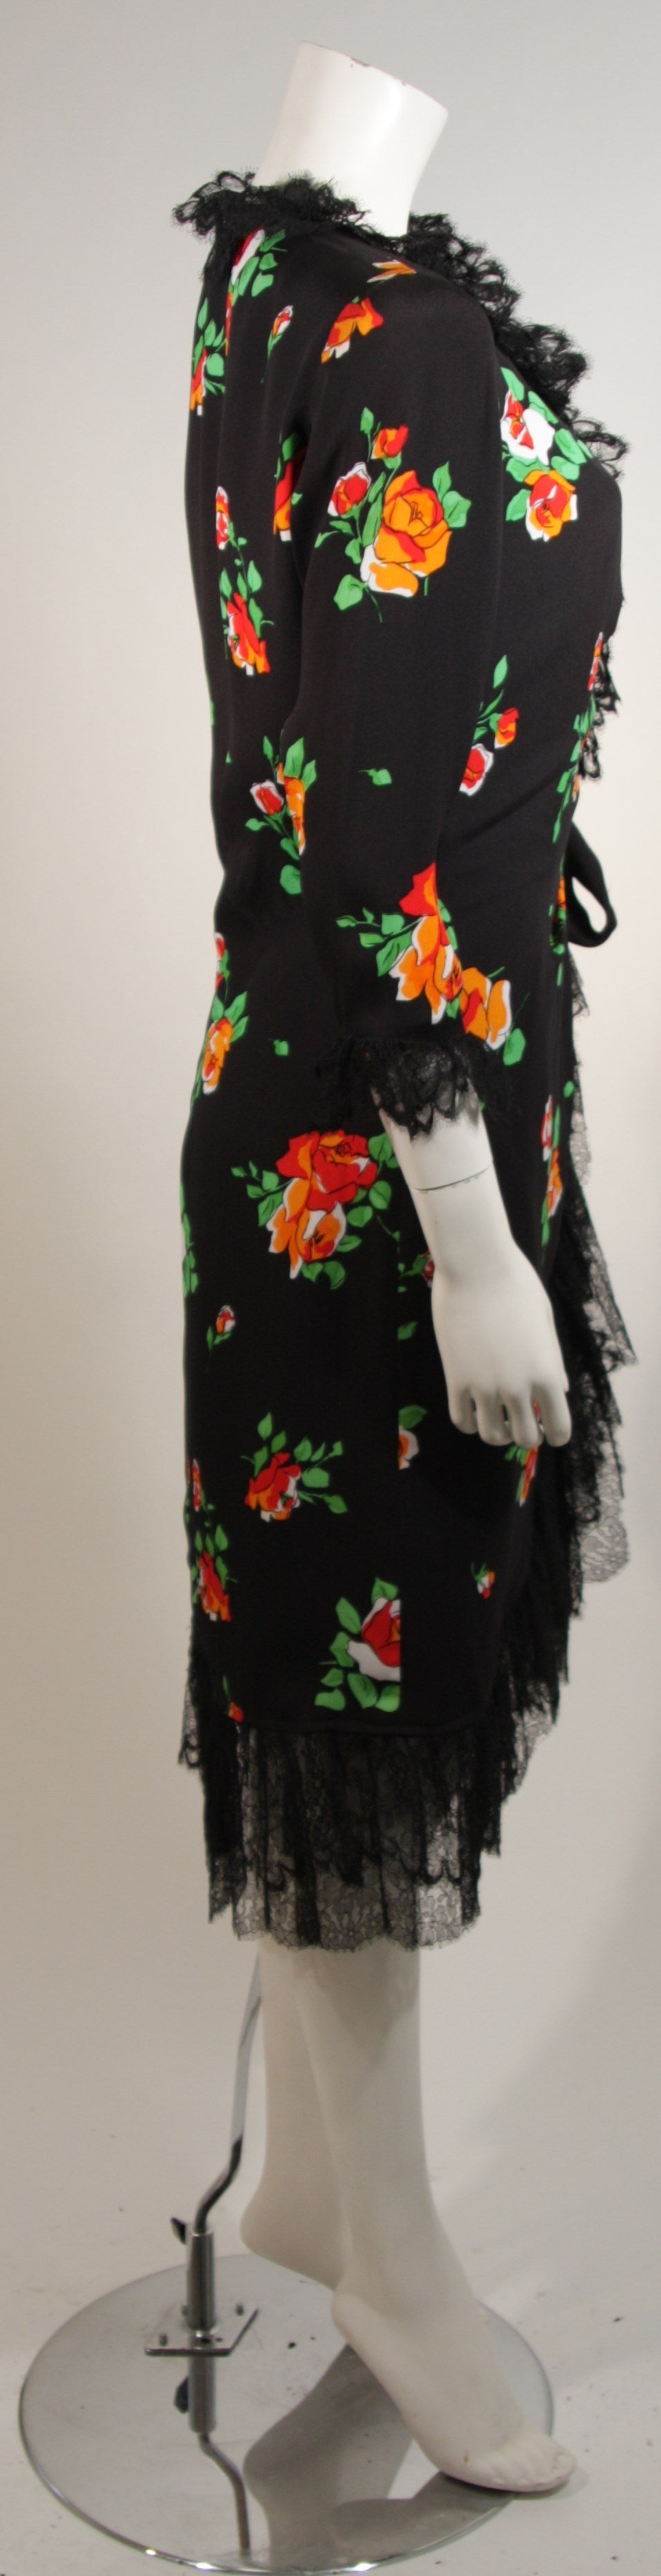 Saint Laurent Rive Gauche Black Crepe Floral Wrap Dress with Lace Trim Size 42 2